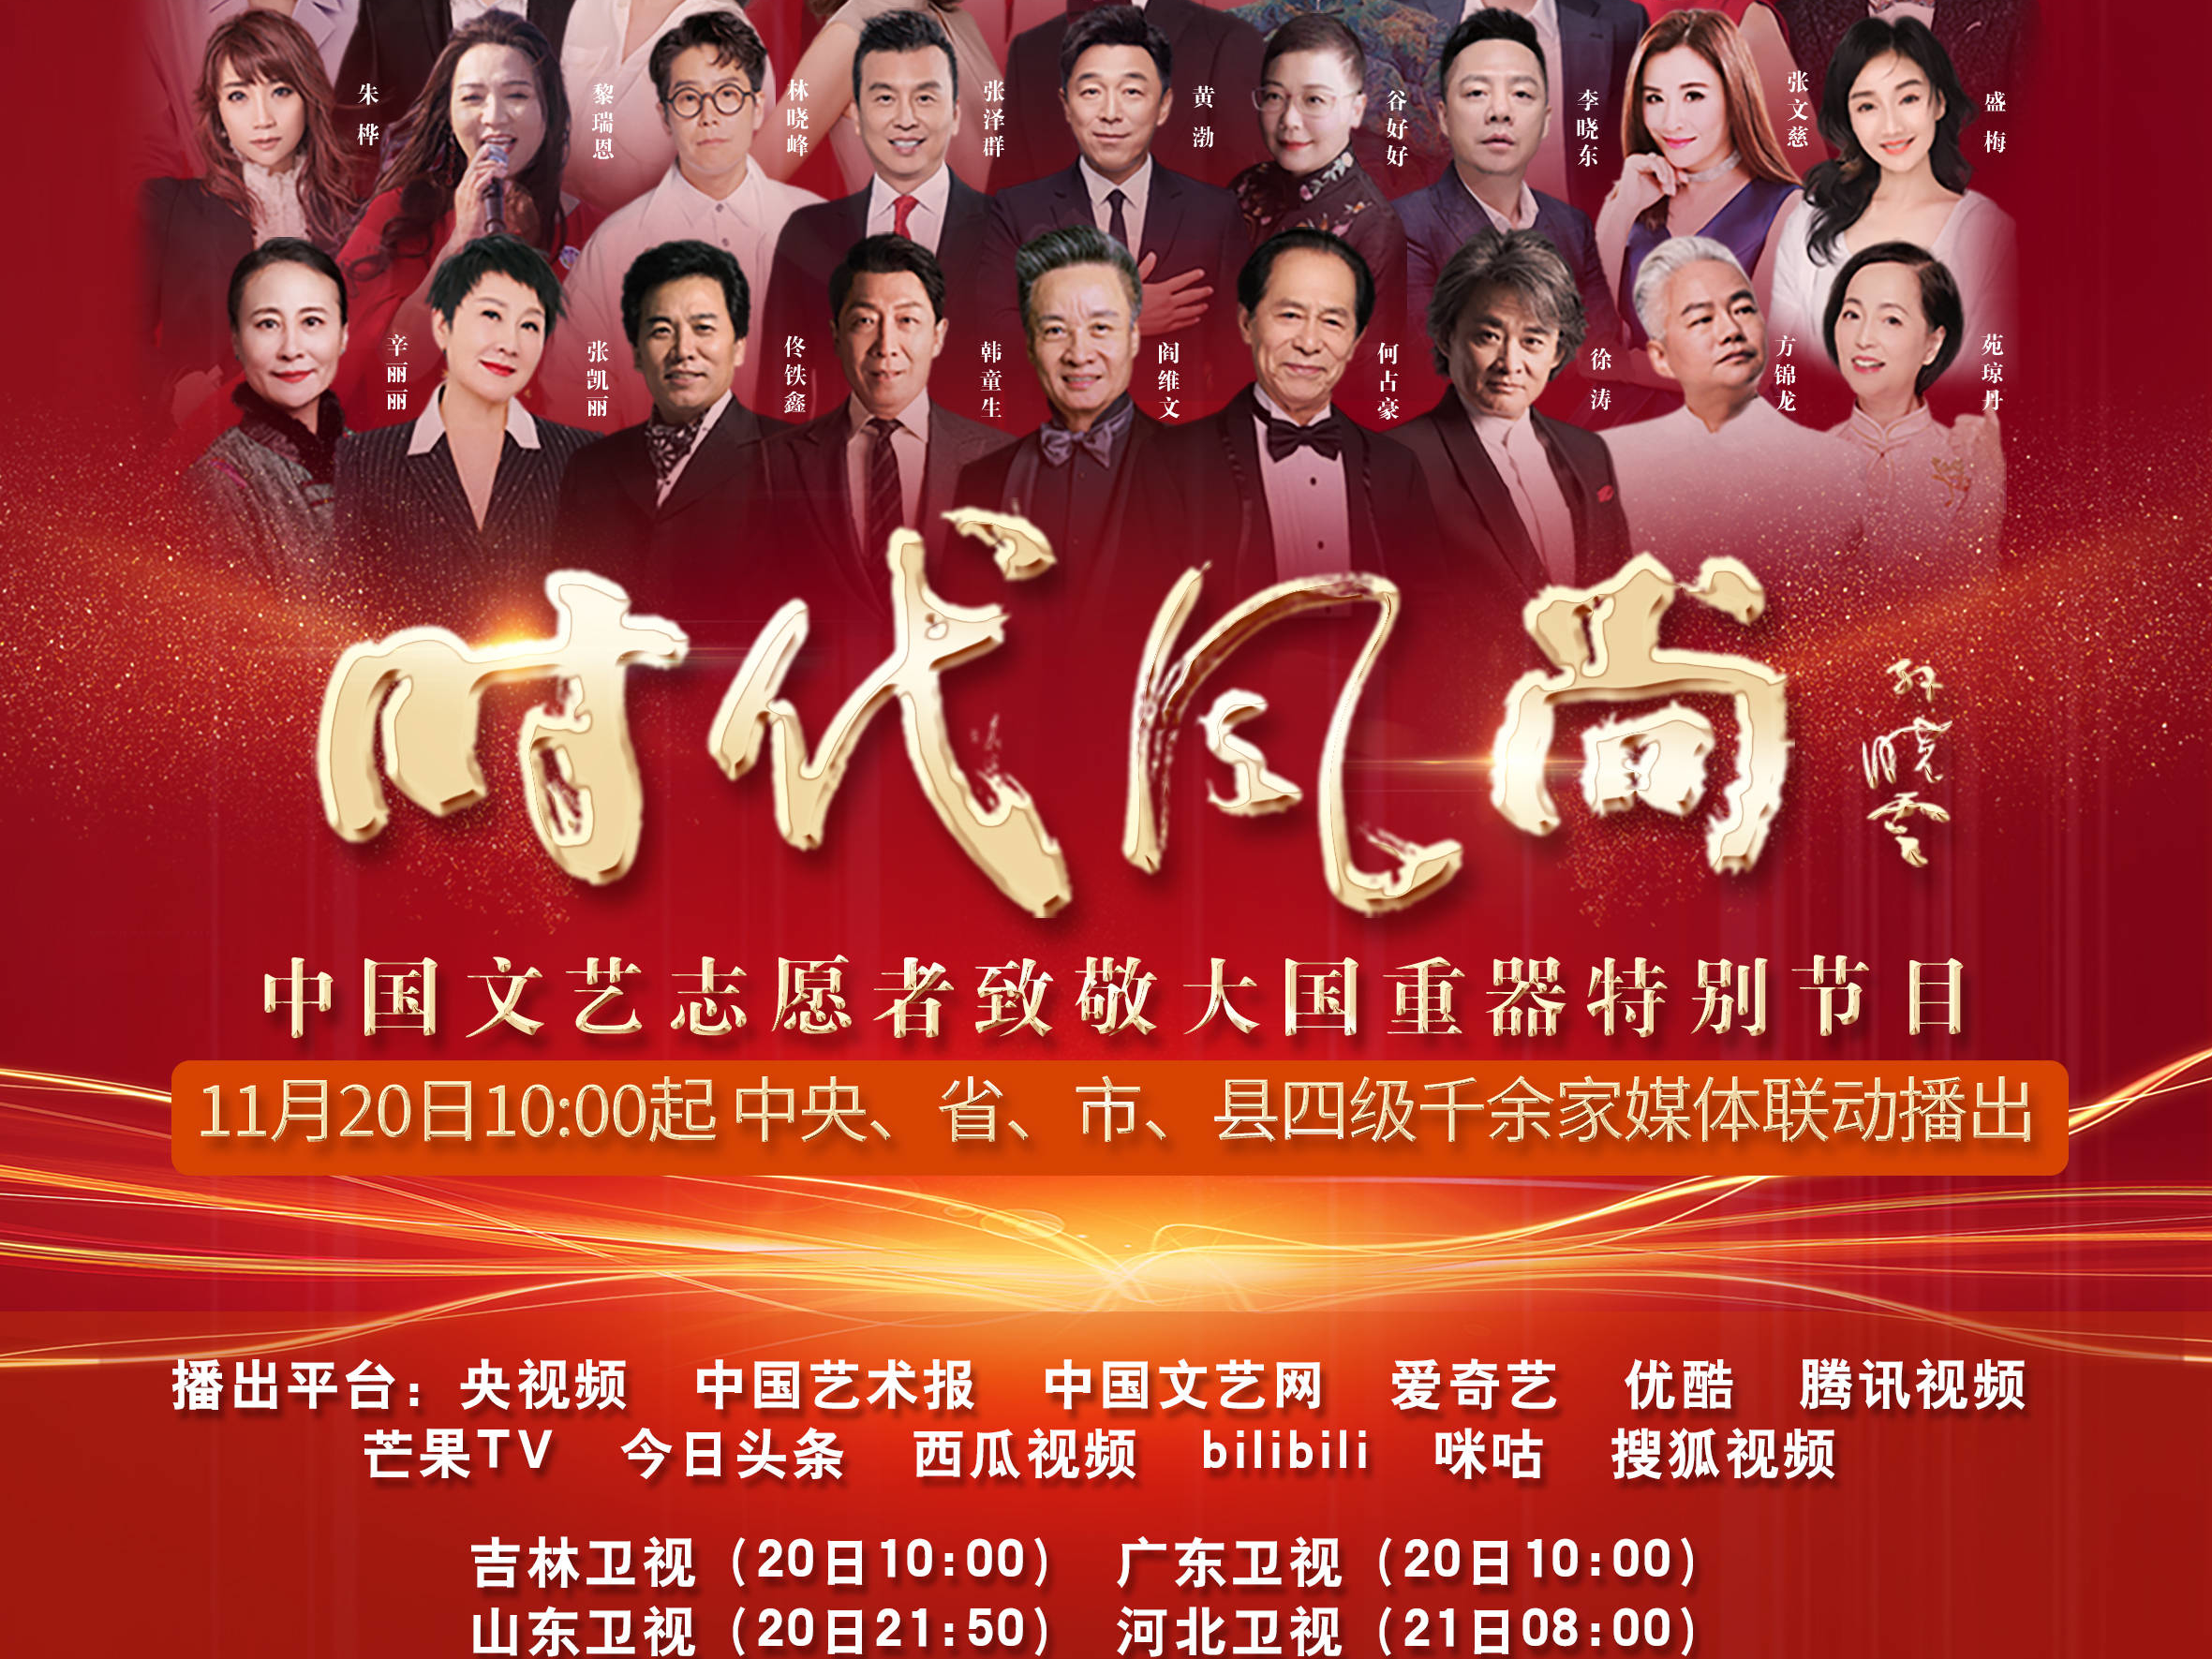 “时代风尚”——中国文艺志愿者致敬大国重器特别节目